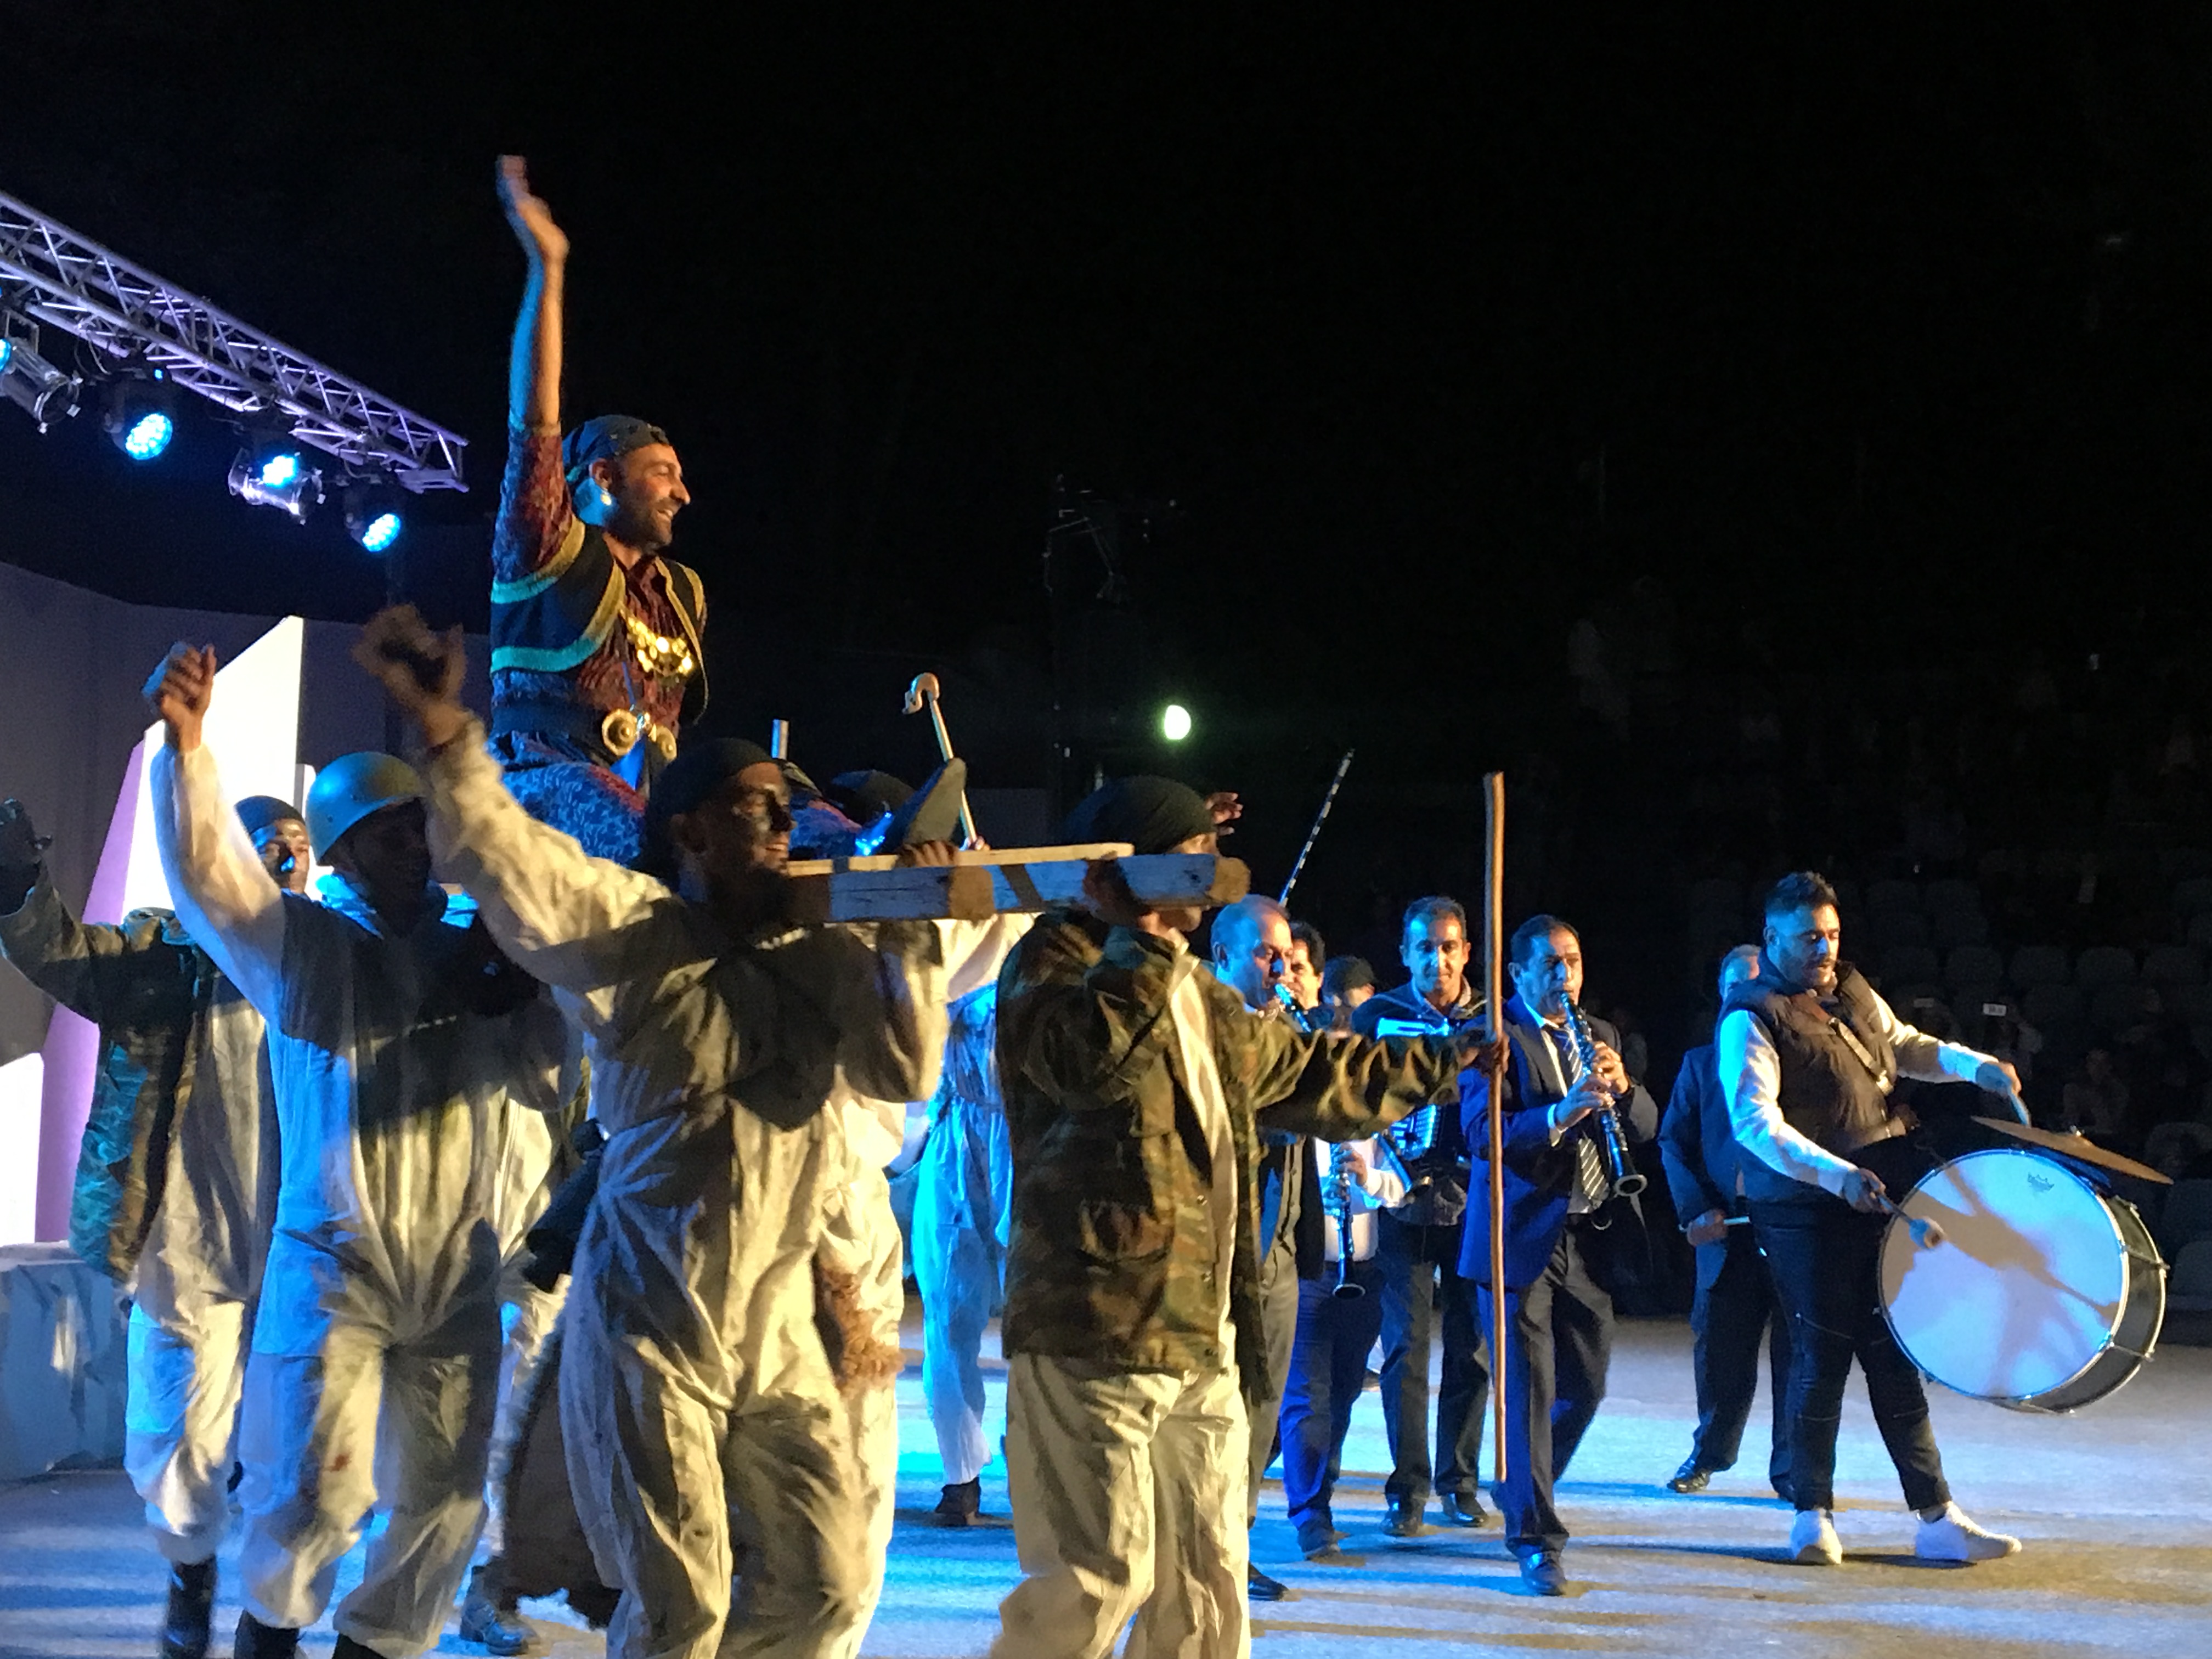 Σε μουσικοχορευτική παράσταση στο Κηποθέατρο Αλκαζάρ ο δήμαρχος Τεμπών